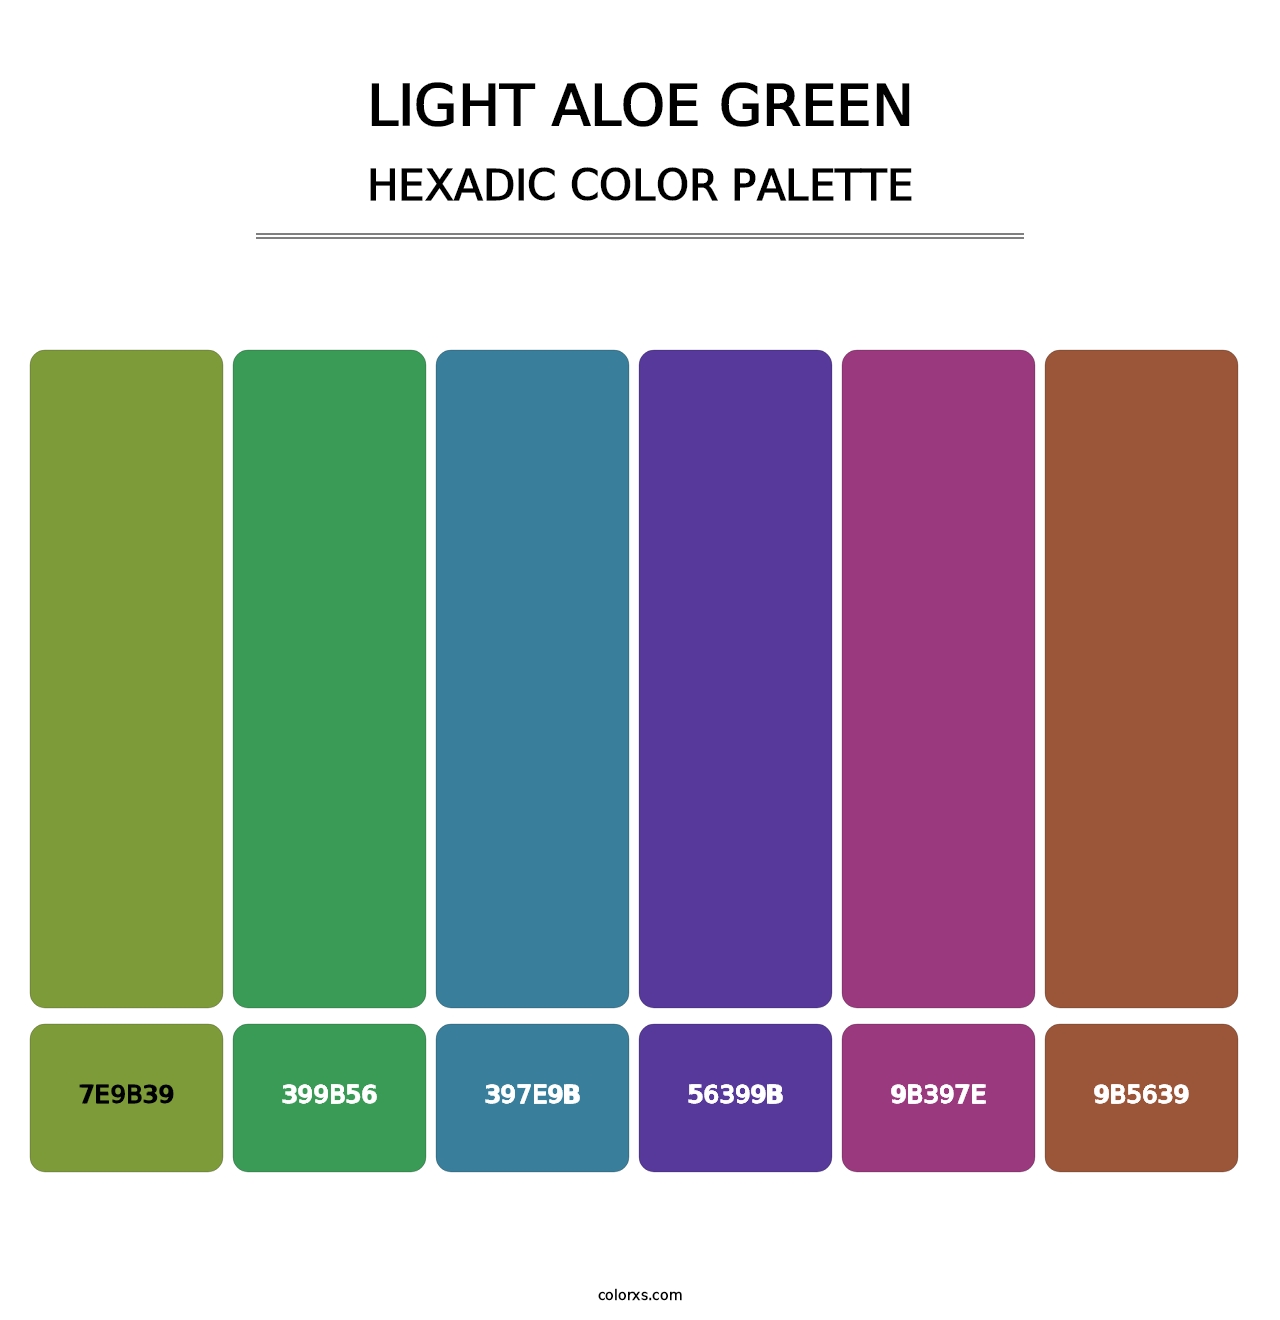 Light Aloe Green - Hexadic Color Palette